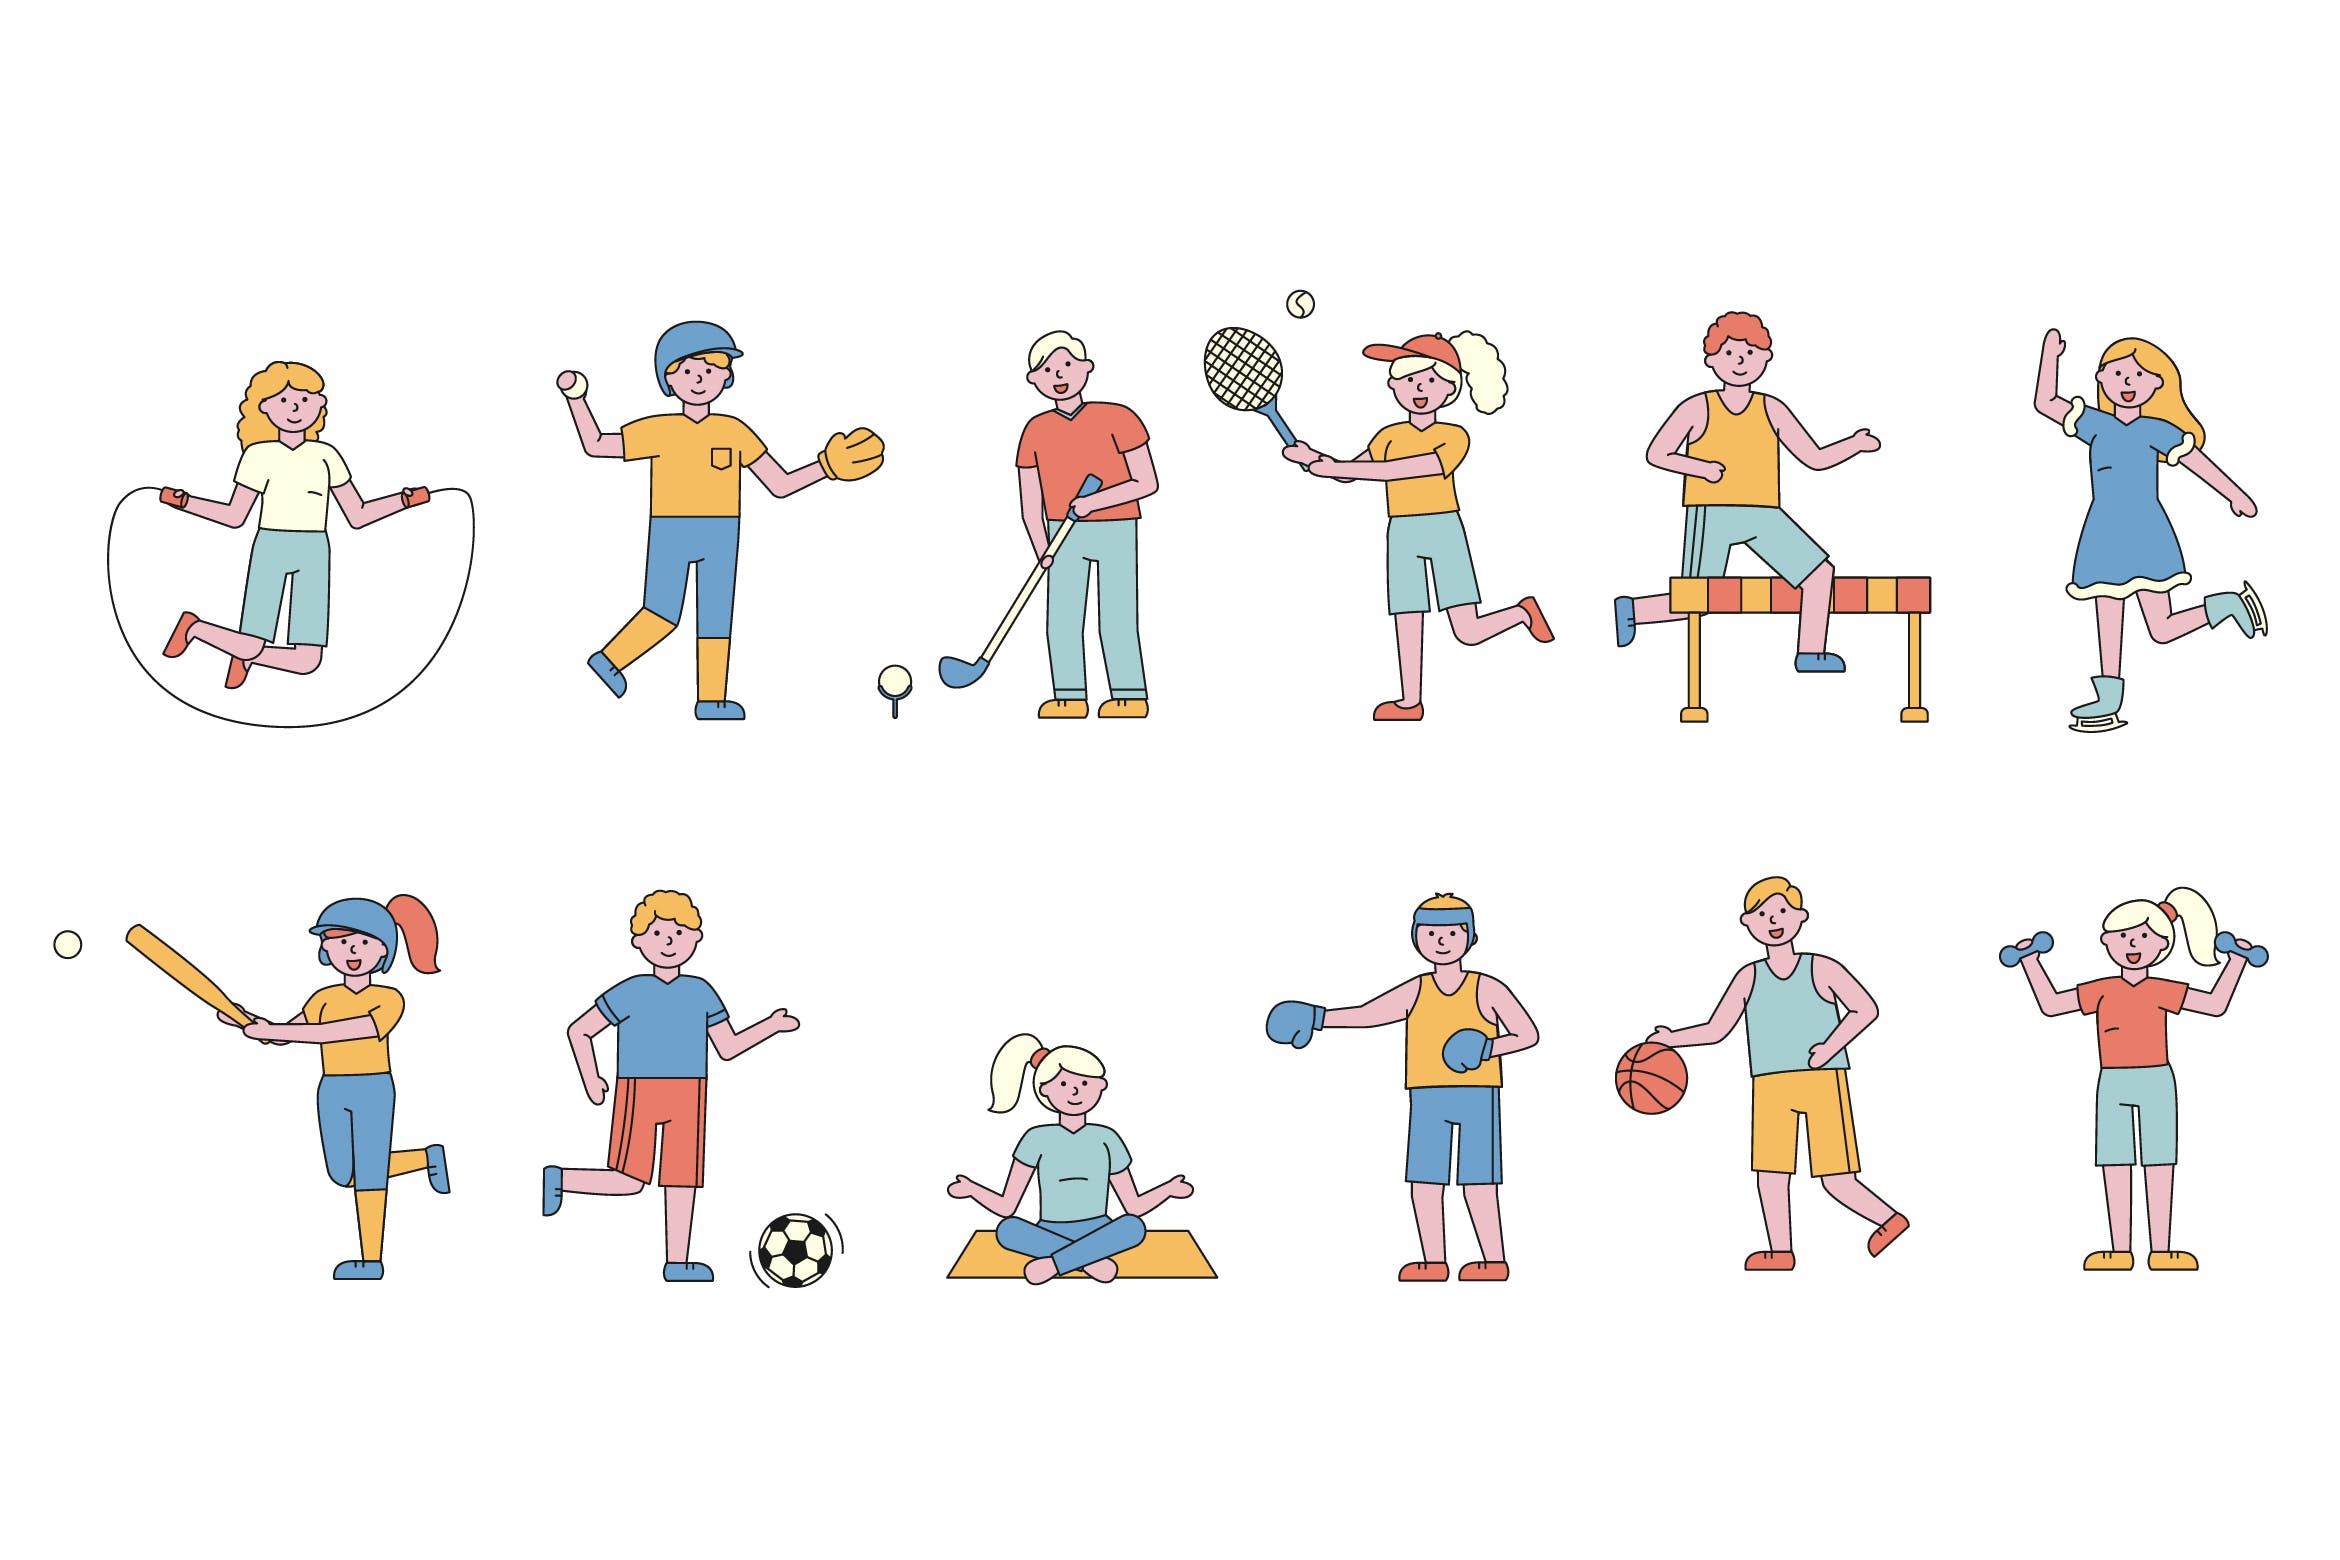 体育运动主题人物形象线条艺术矢量插画素材库精选素材 Sportsmen Lineart People Character Collection插图